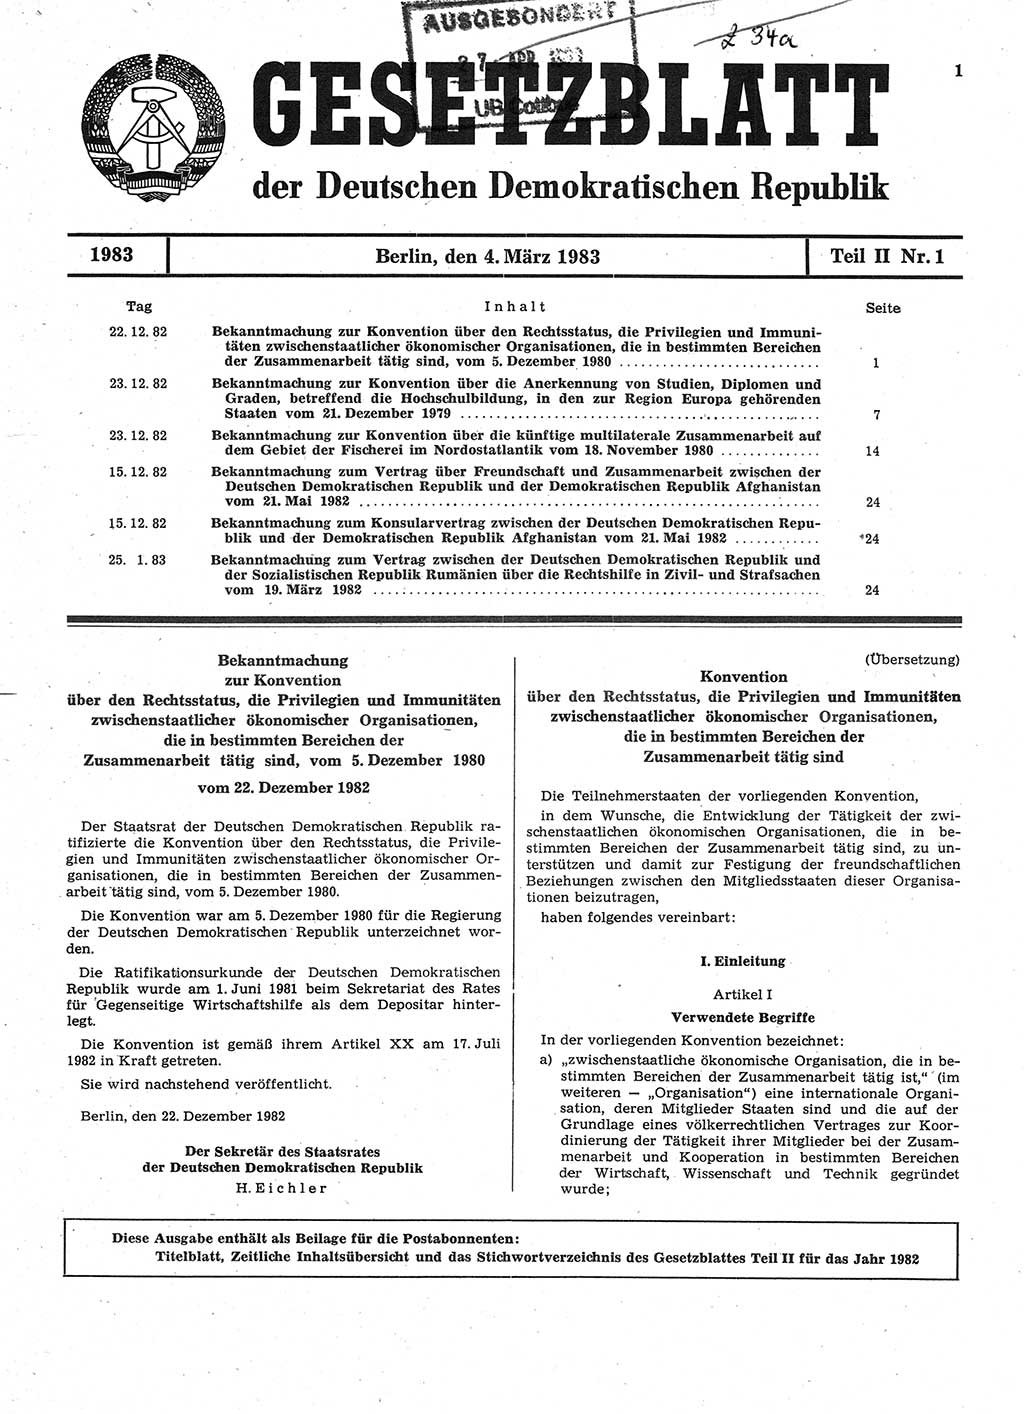 Gesetzblatt (GBl.) der Deutschen Demokratischen Republik (DDR) Teil ⅠⅠ 1983, Seite 1 (GBl. DDR ⅠⅠ 1983, S. 1)